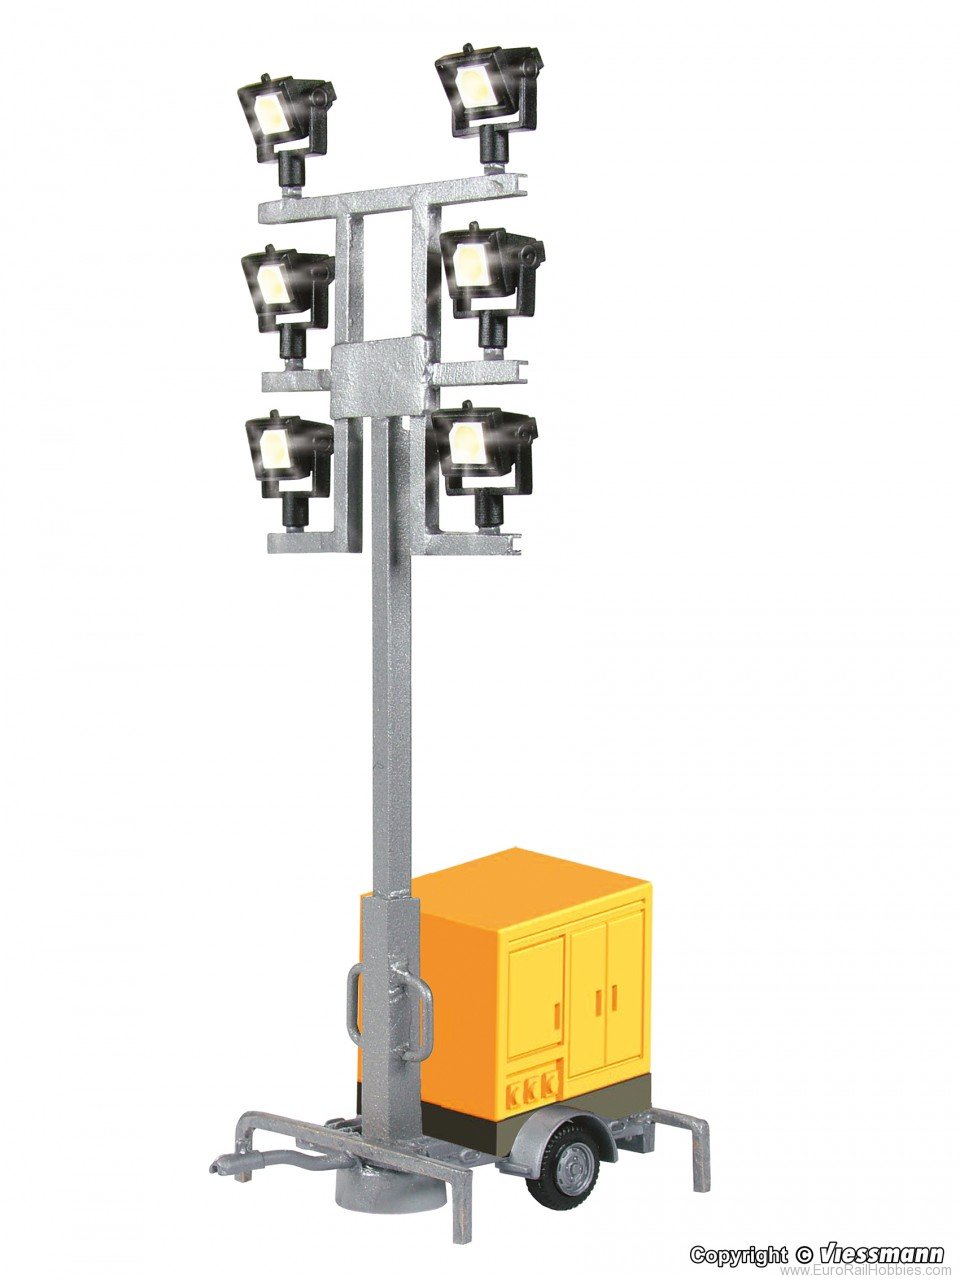 Viessmann 1343 H0 Luminous giraffe on a trailer, with 6 LEDs